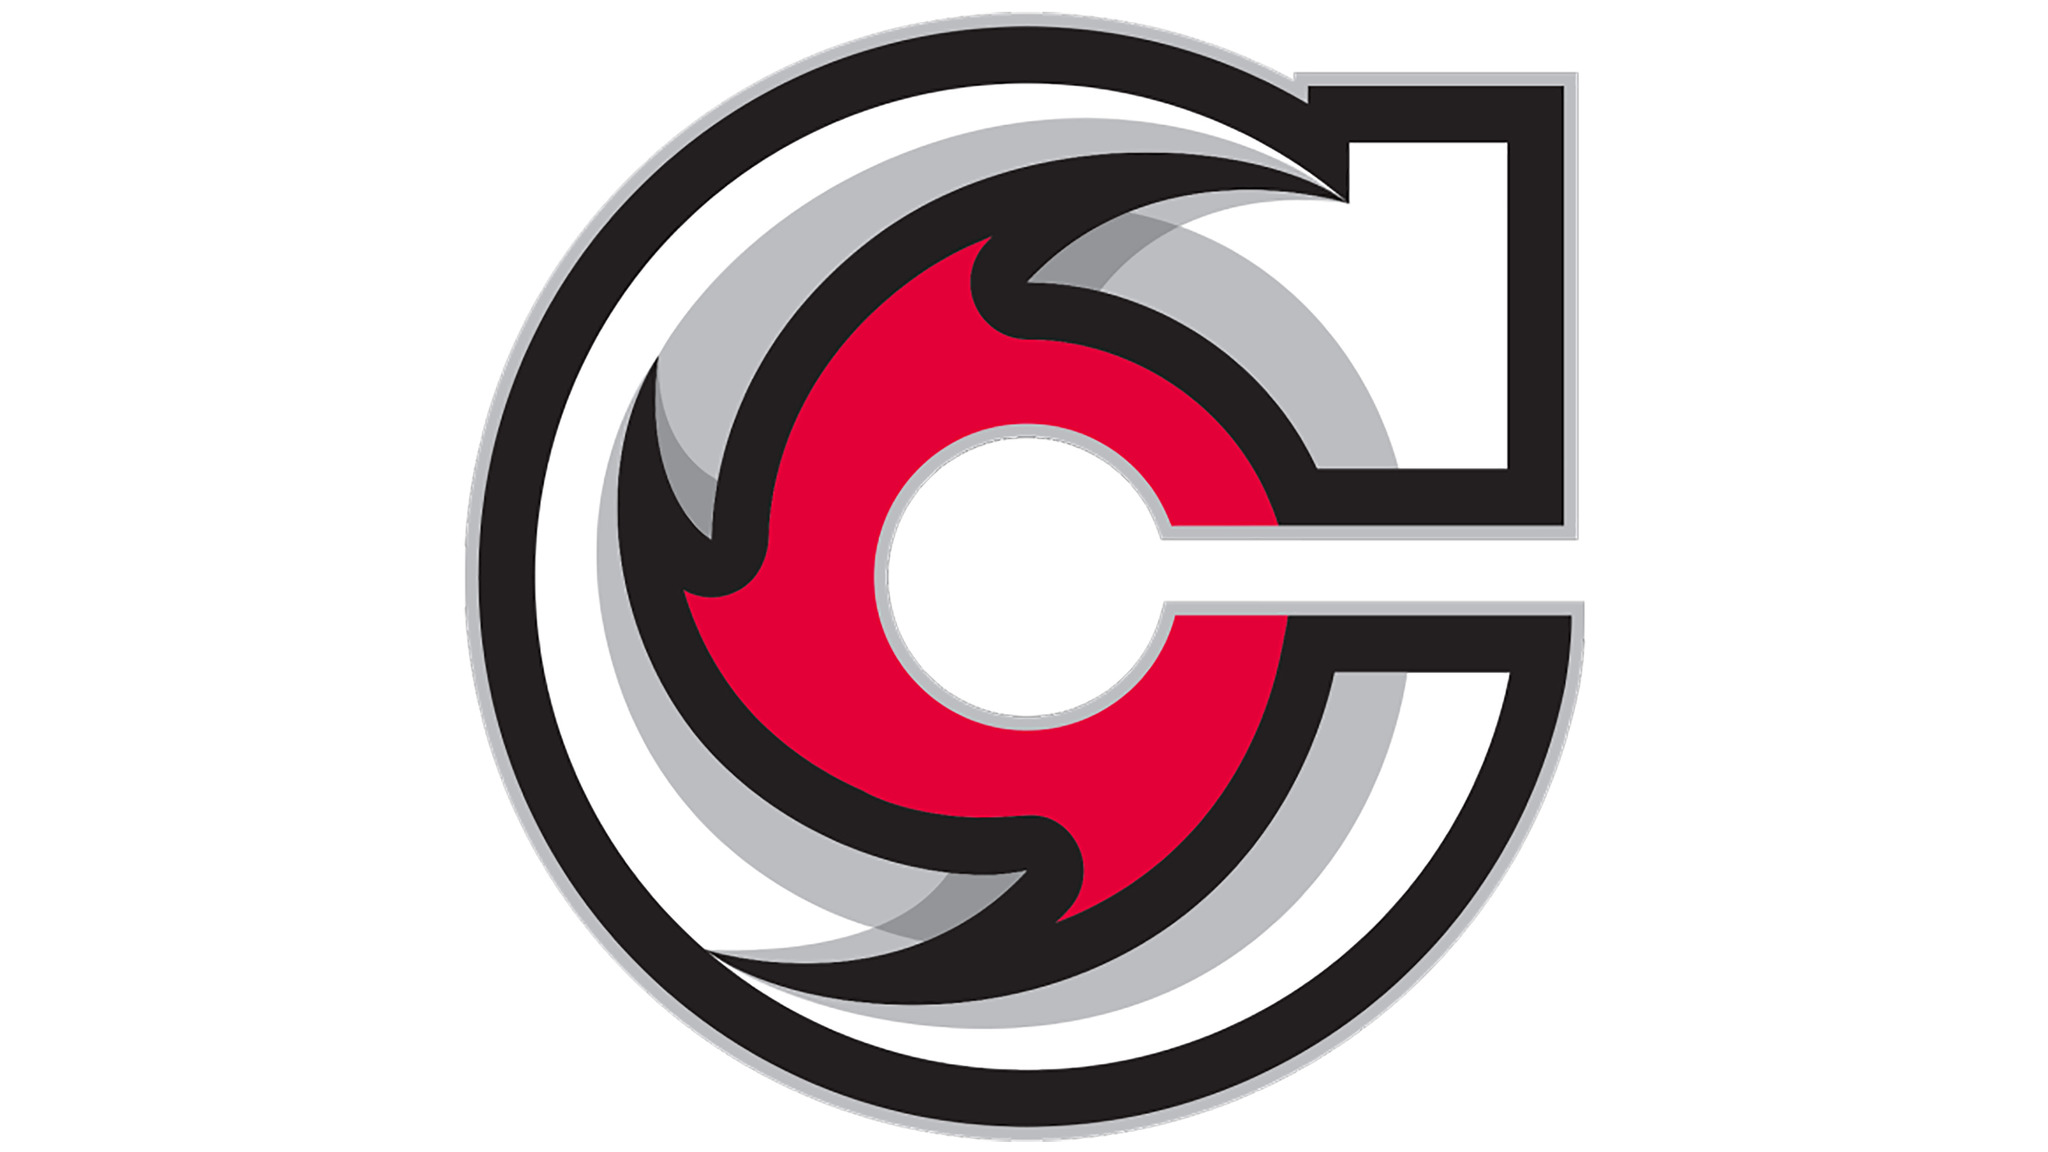 Cincinnati Cyclones Tickets | Single Game Tickets & Schedule | Ticketmaster.com